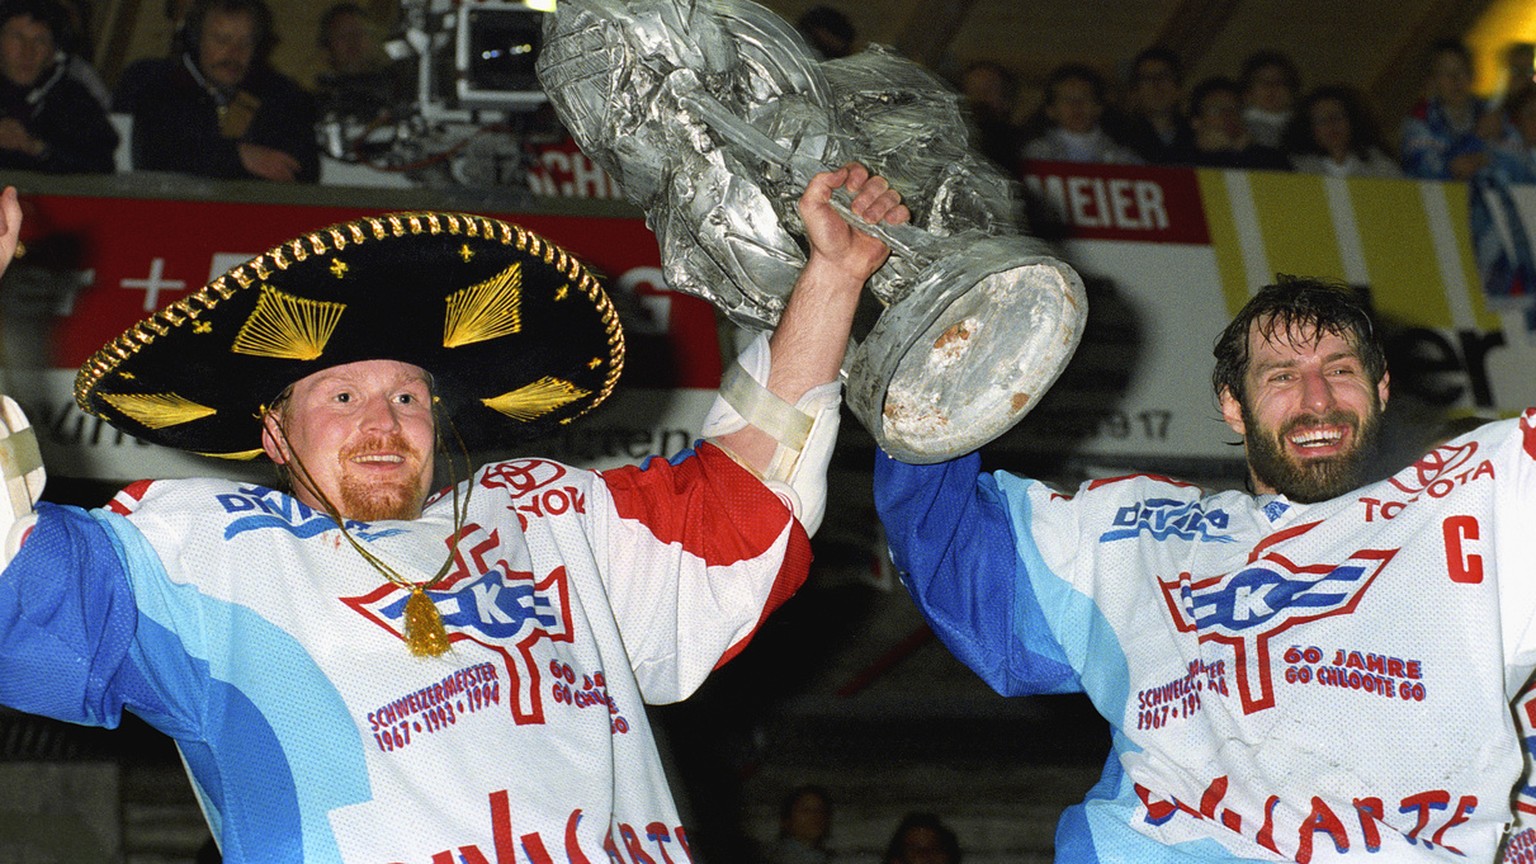 Die Eishockeyspieler Felix Hollenstein, rechts, und Roman Waeger des EHC Kloten feiern am 1. April 1995 im Stadion Schluefweg in Kloten, Schweiz, den Sieg der Eishockey Meisterschaft. (KEYSTONE/Str)